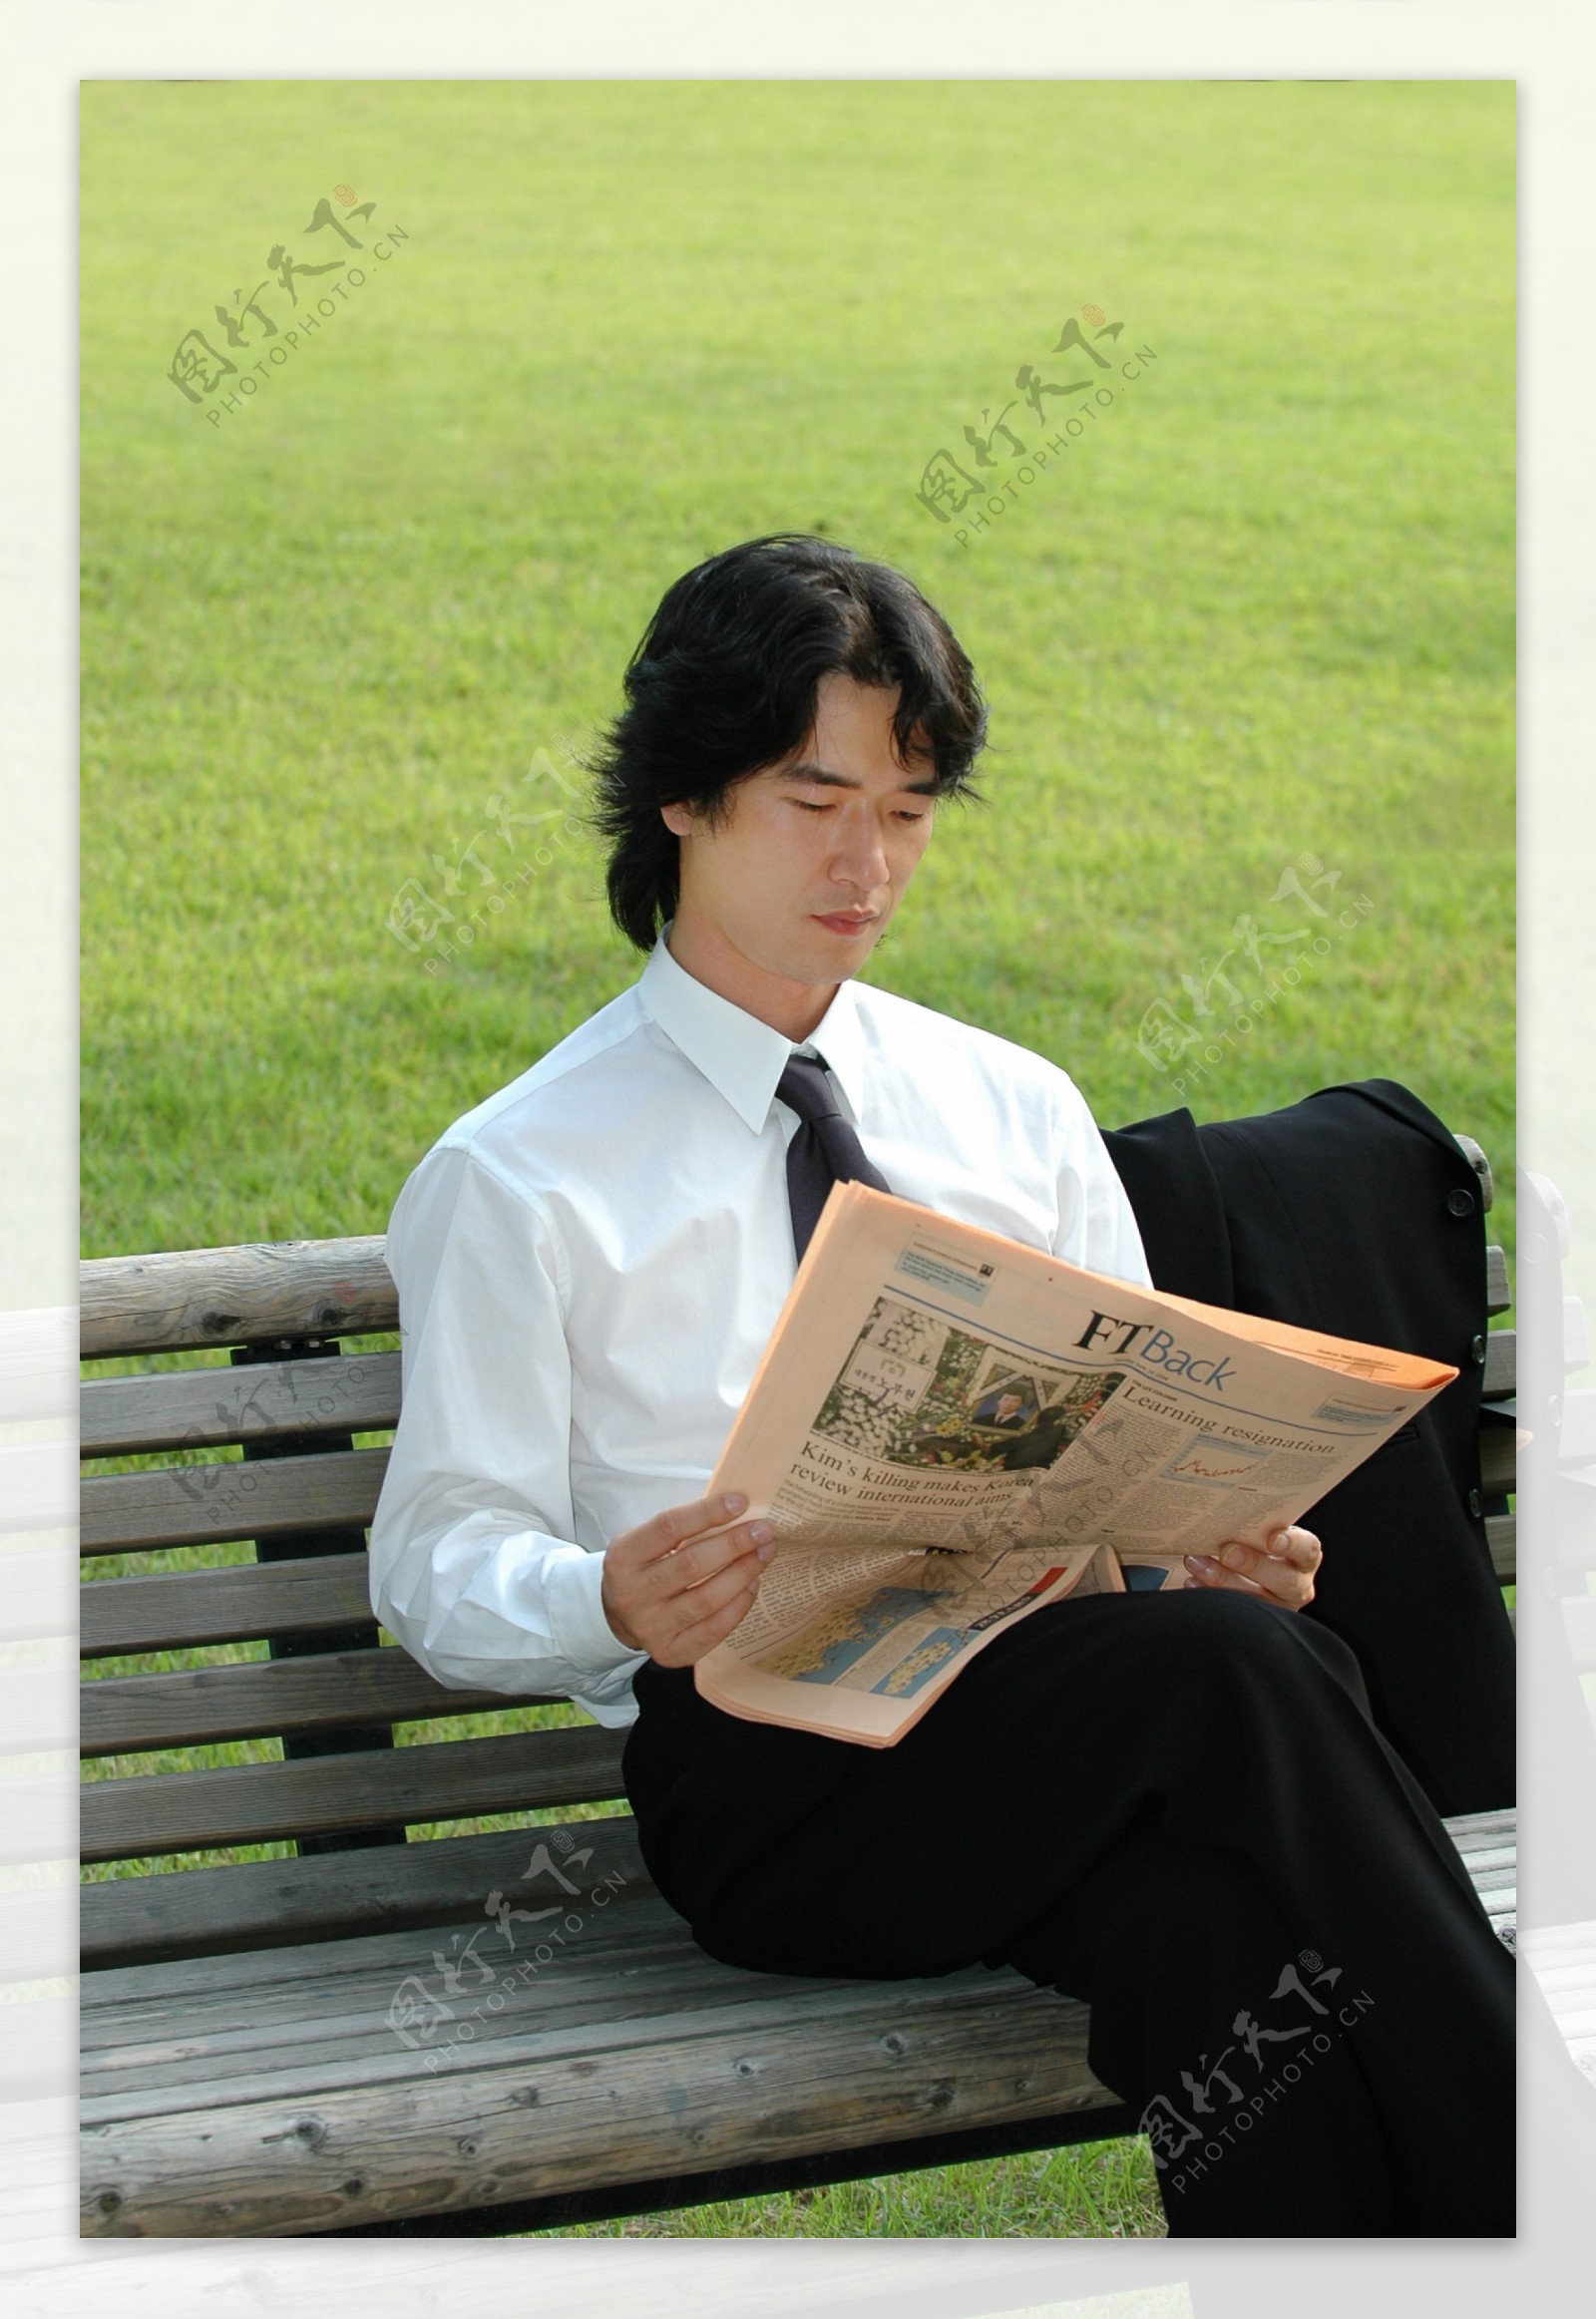 商业男性特写办公工作表情休闲姿势全方位平面设计素材辞典